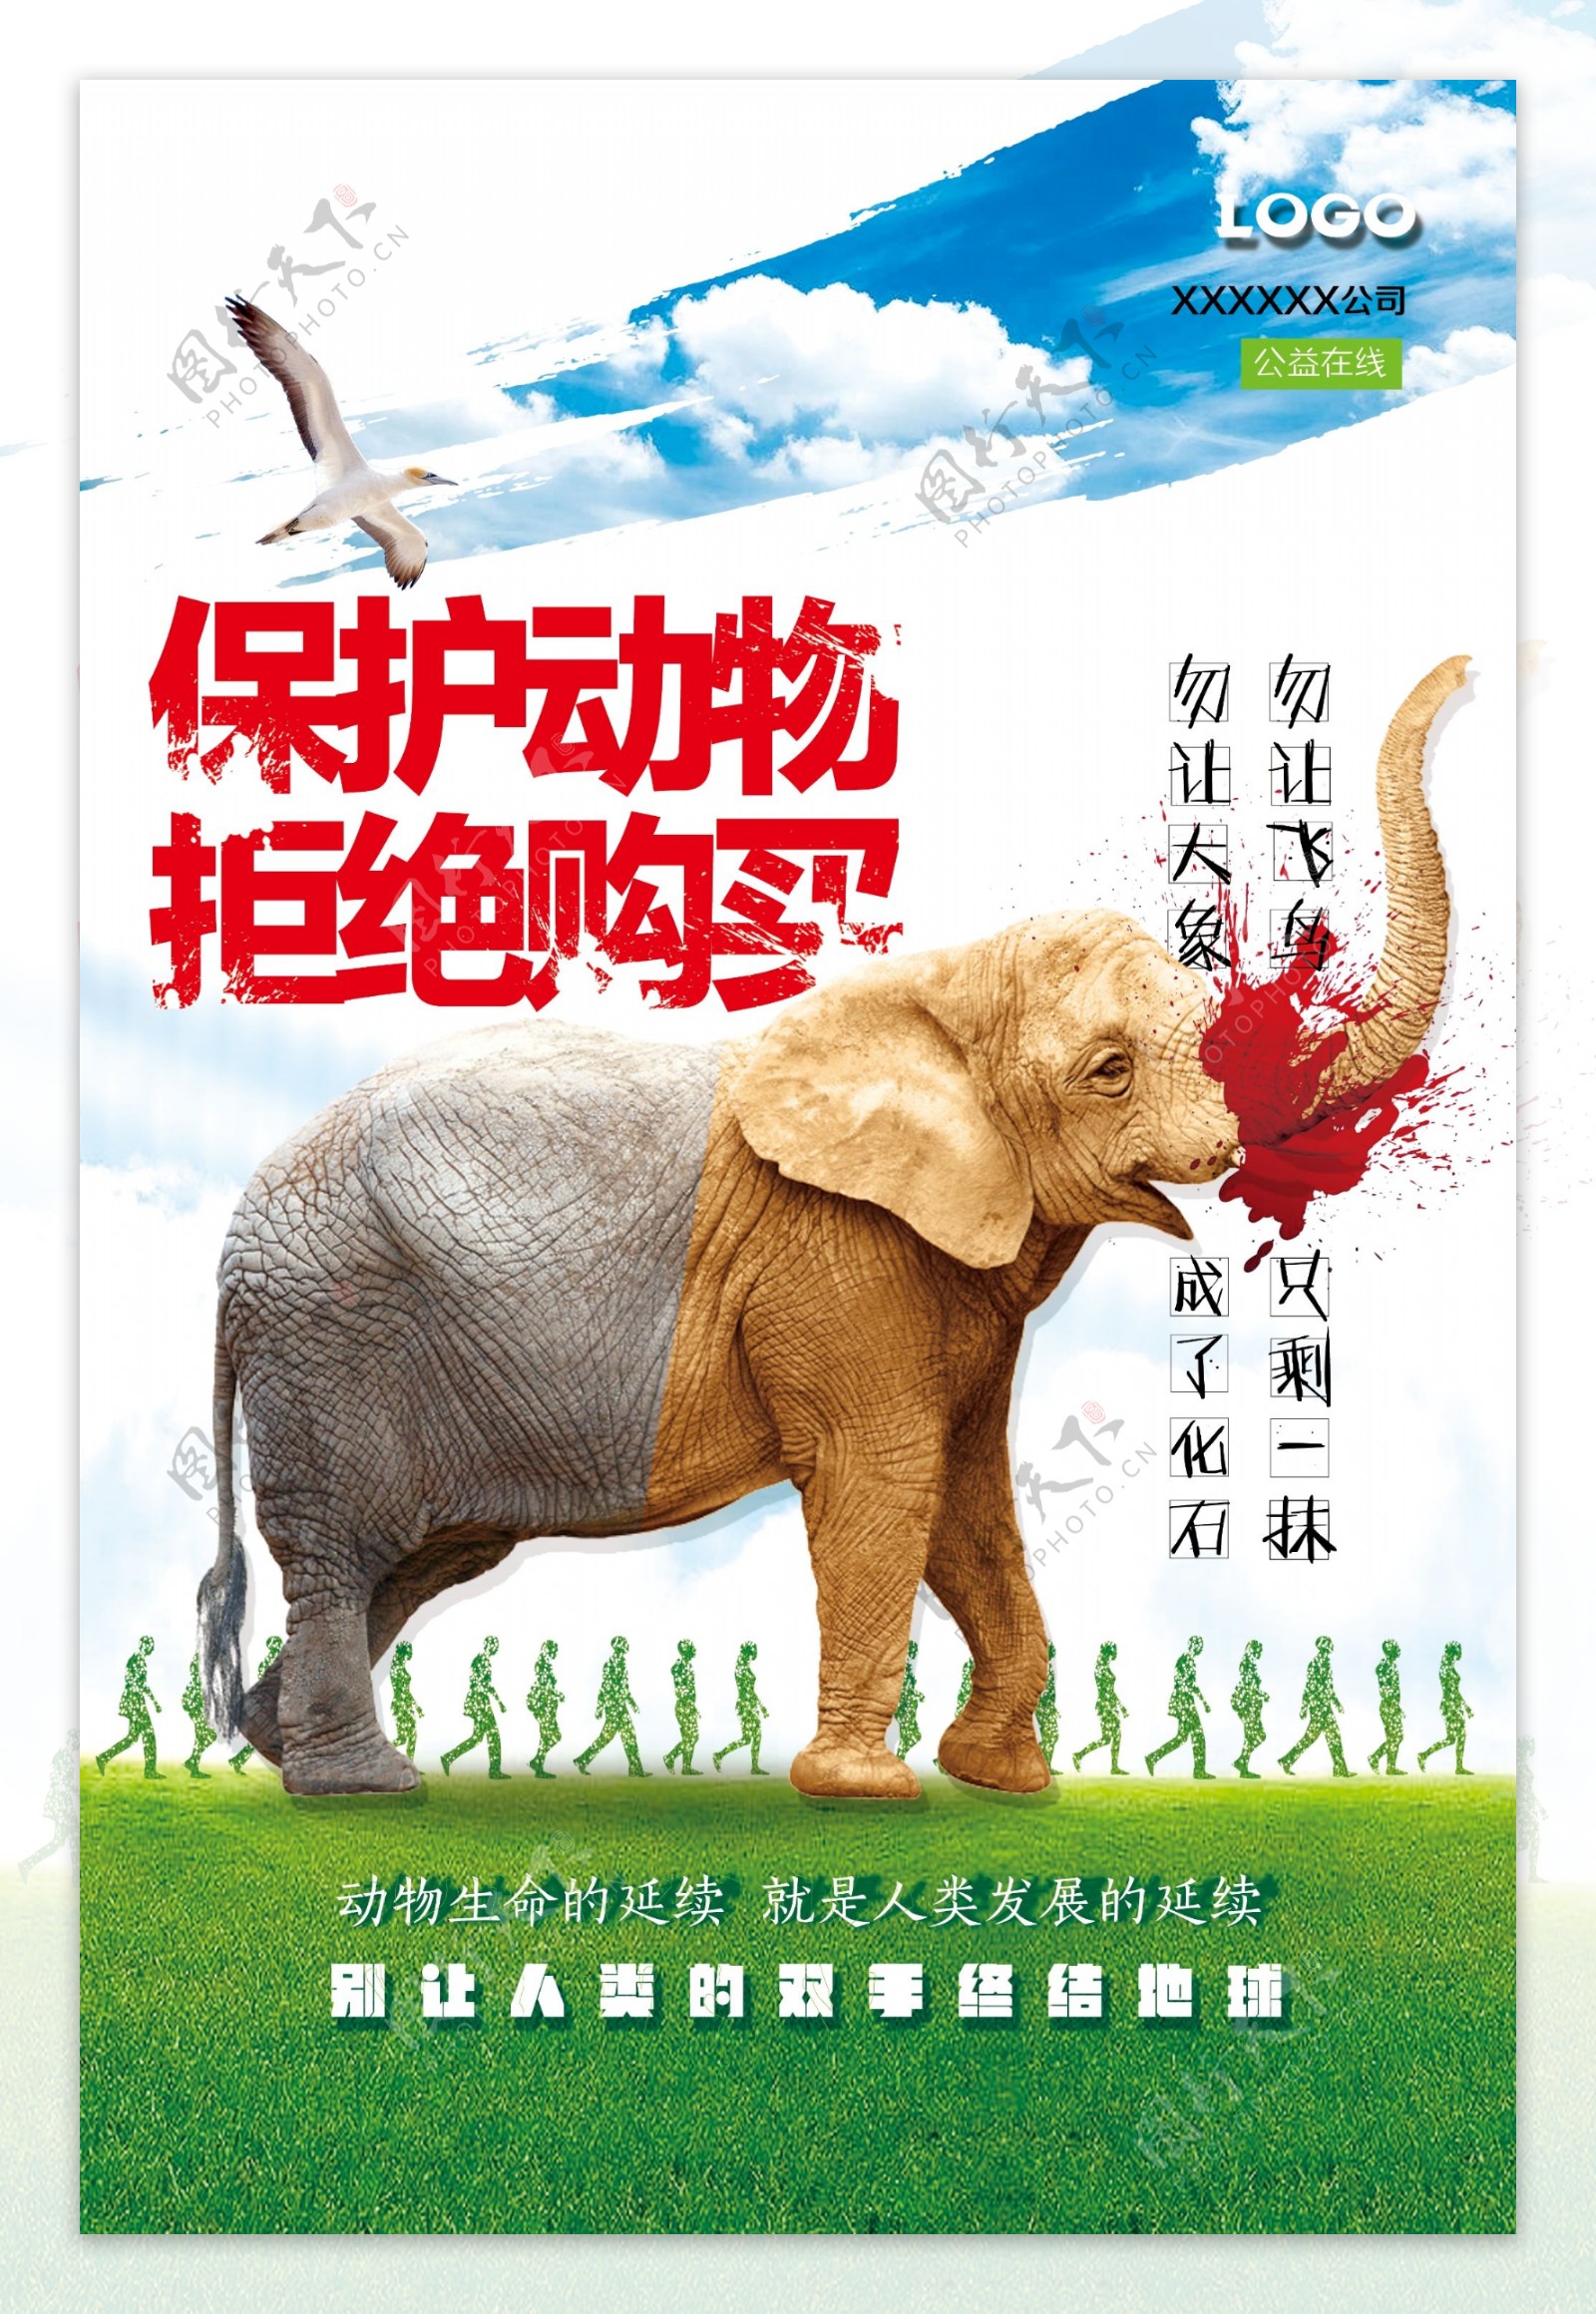 保护动物公益宣传大象海报